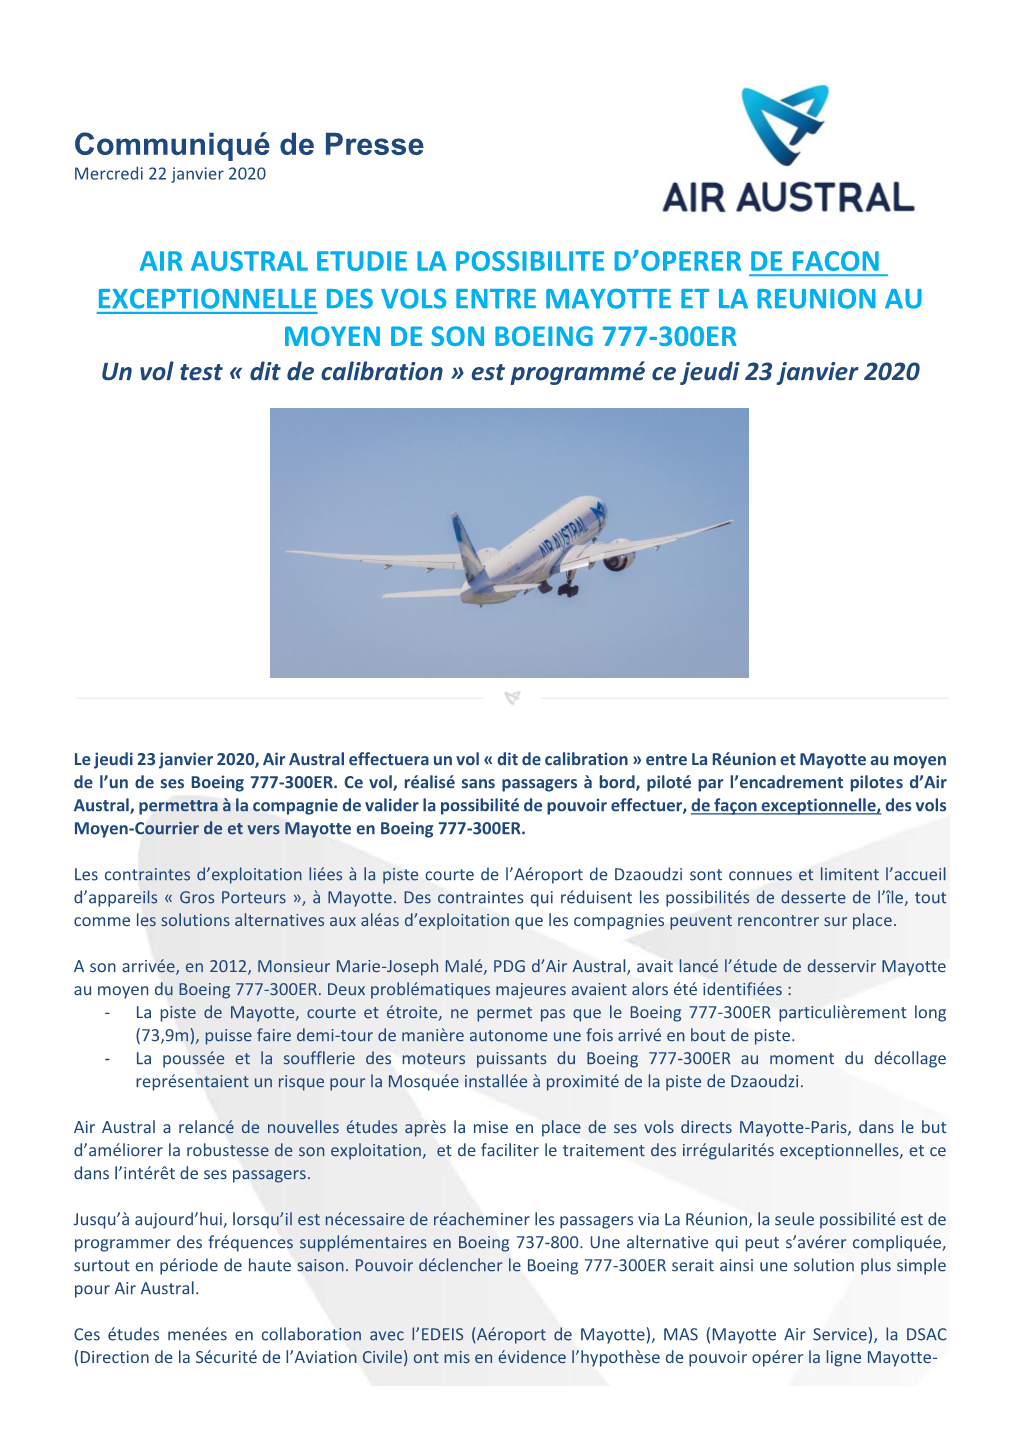 Air Austral Etudie La Possibilite D'operer De